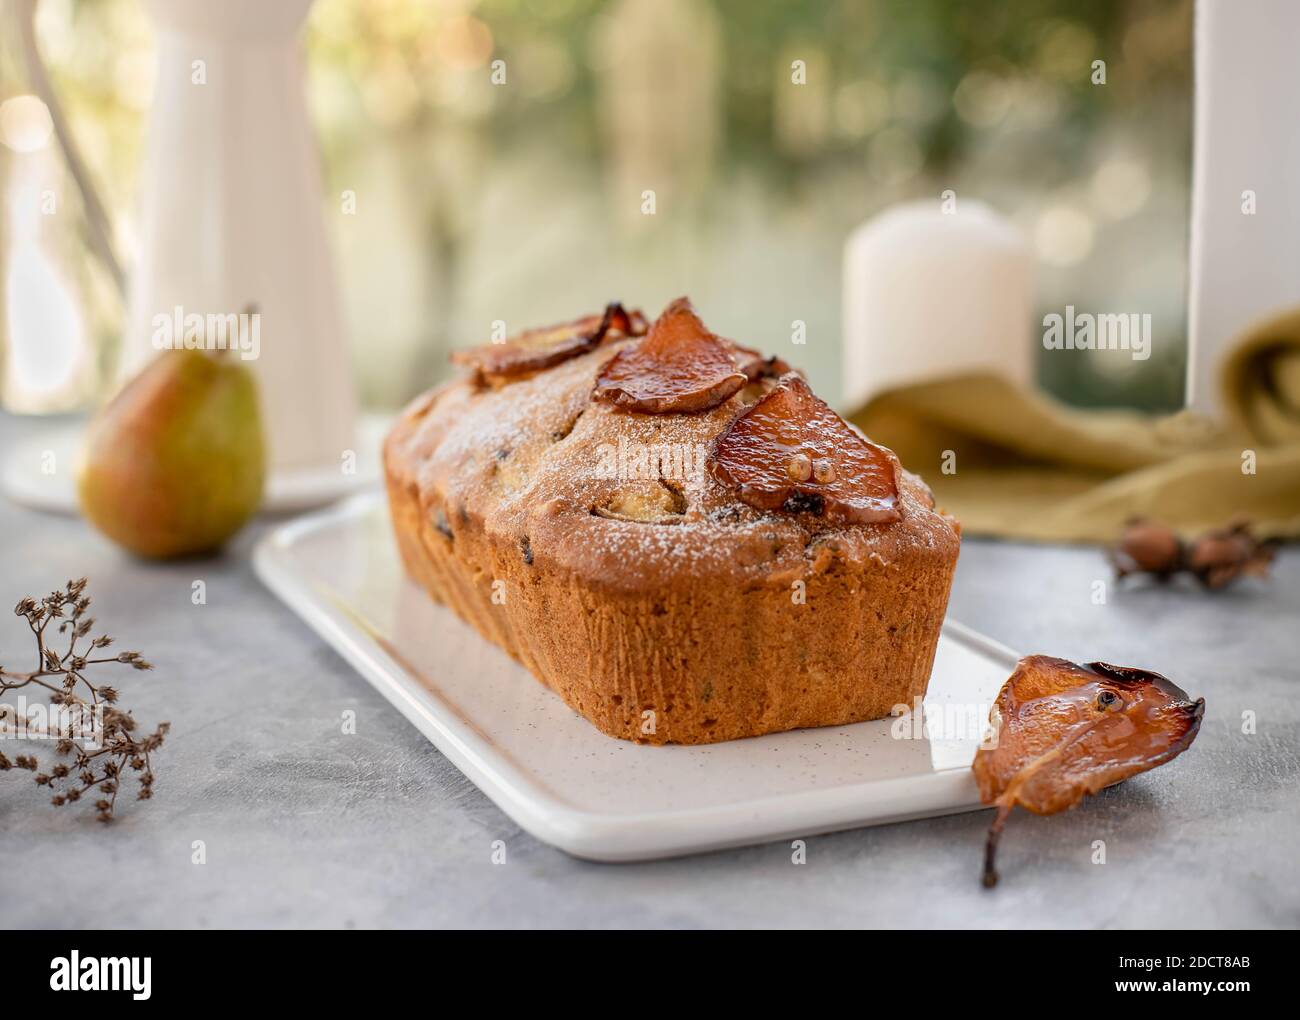 gâteau au muffin aux poires, noix décorées de poires caramélisées. Arrière-plan clair Banque D'Images